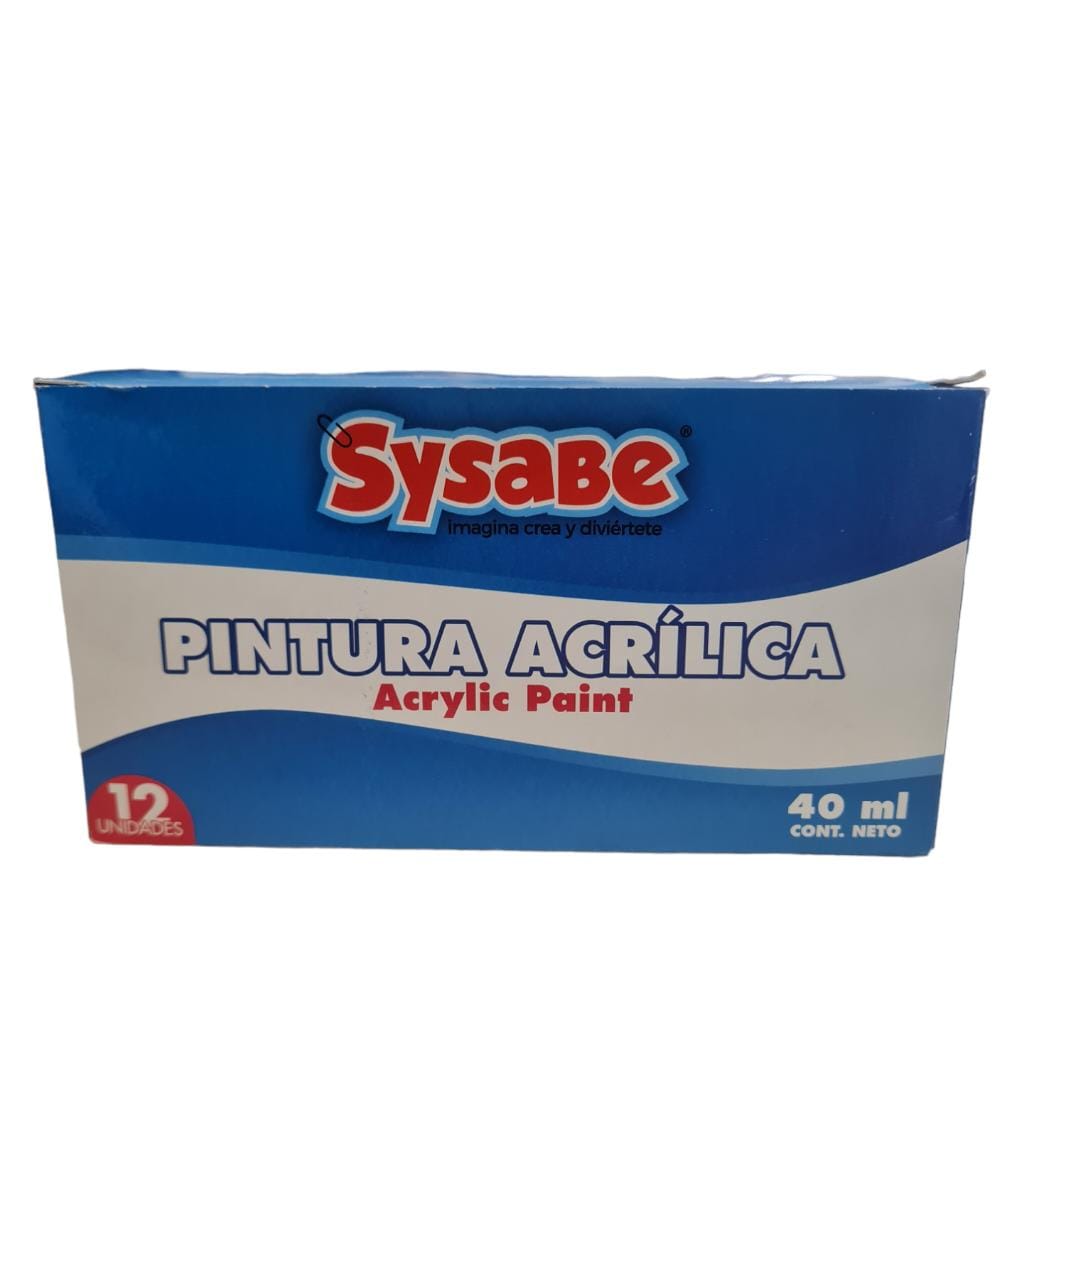 PINTURAS ACRILICAS – Sysabe